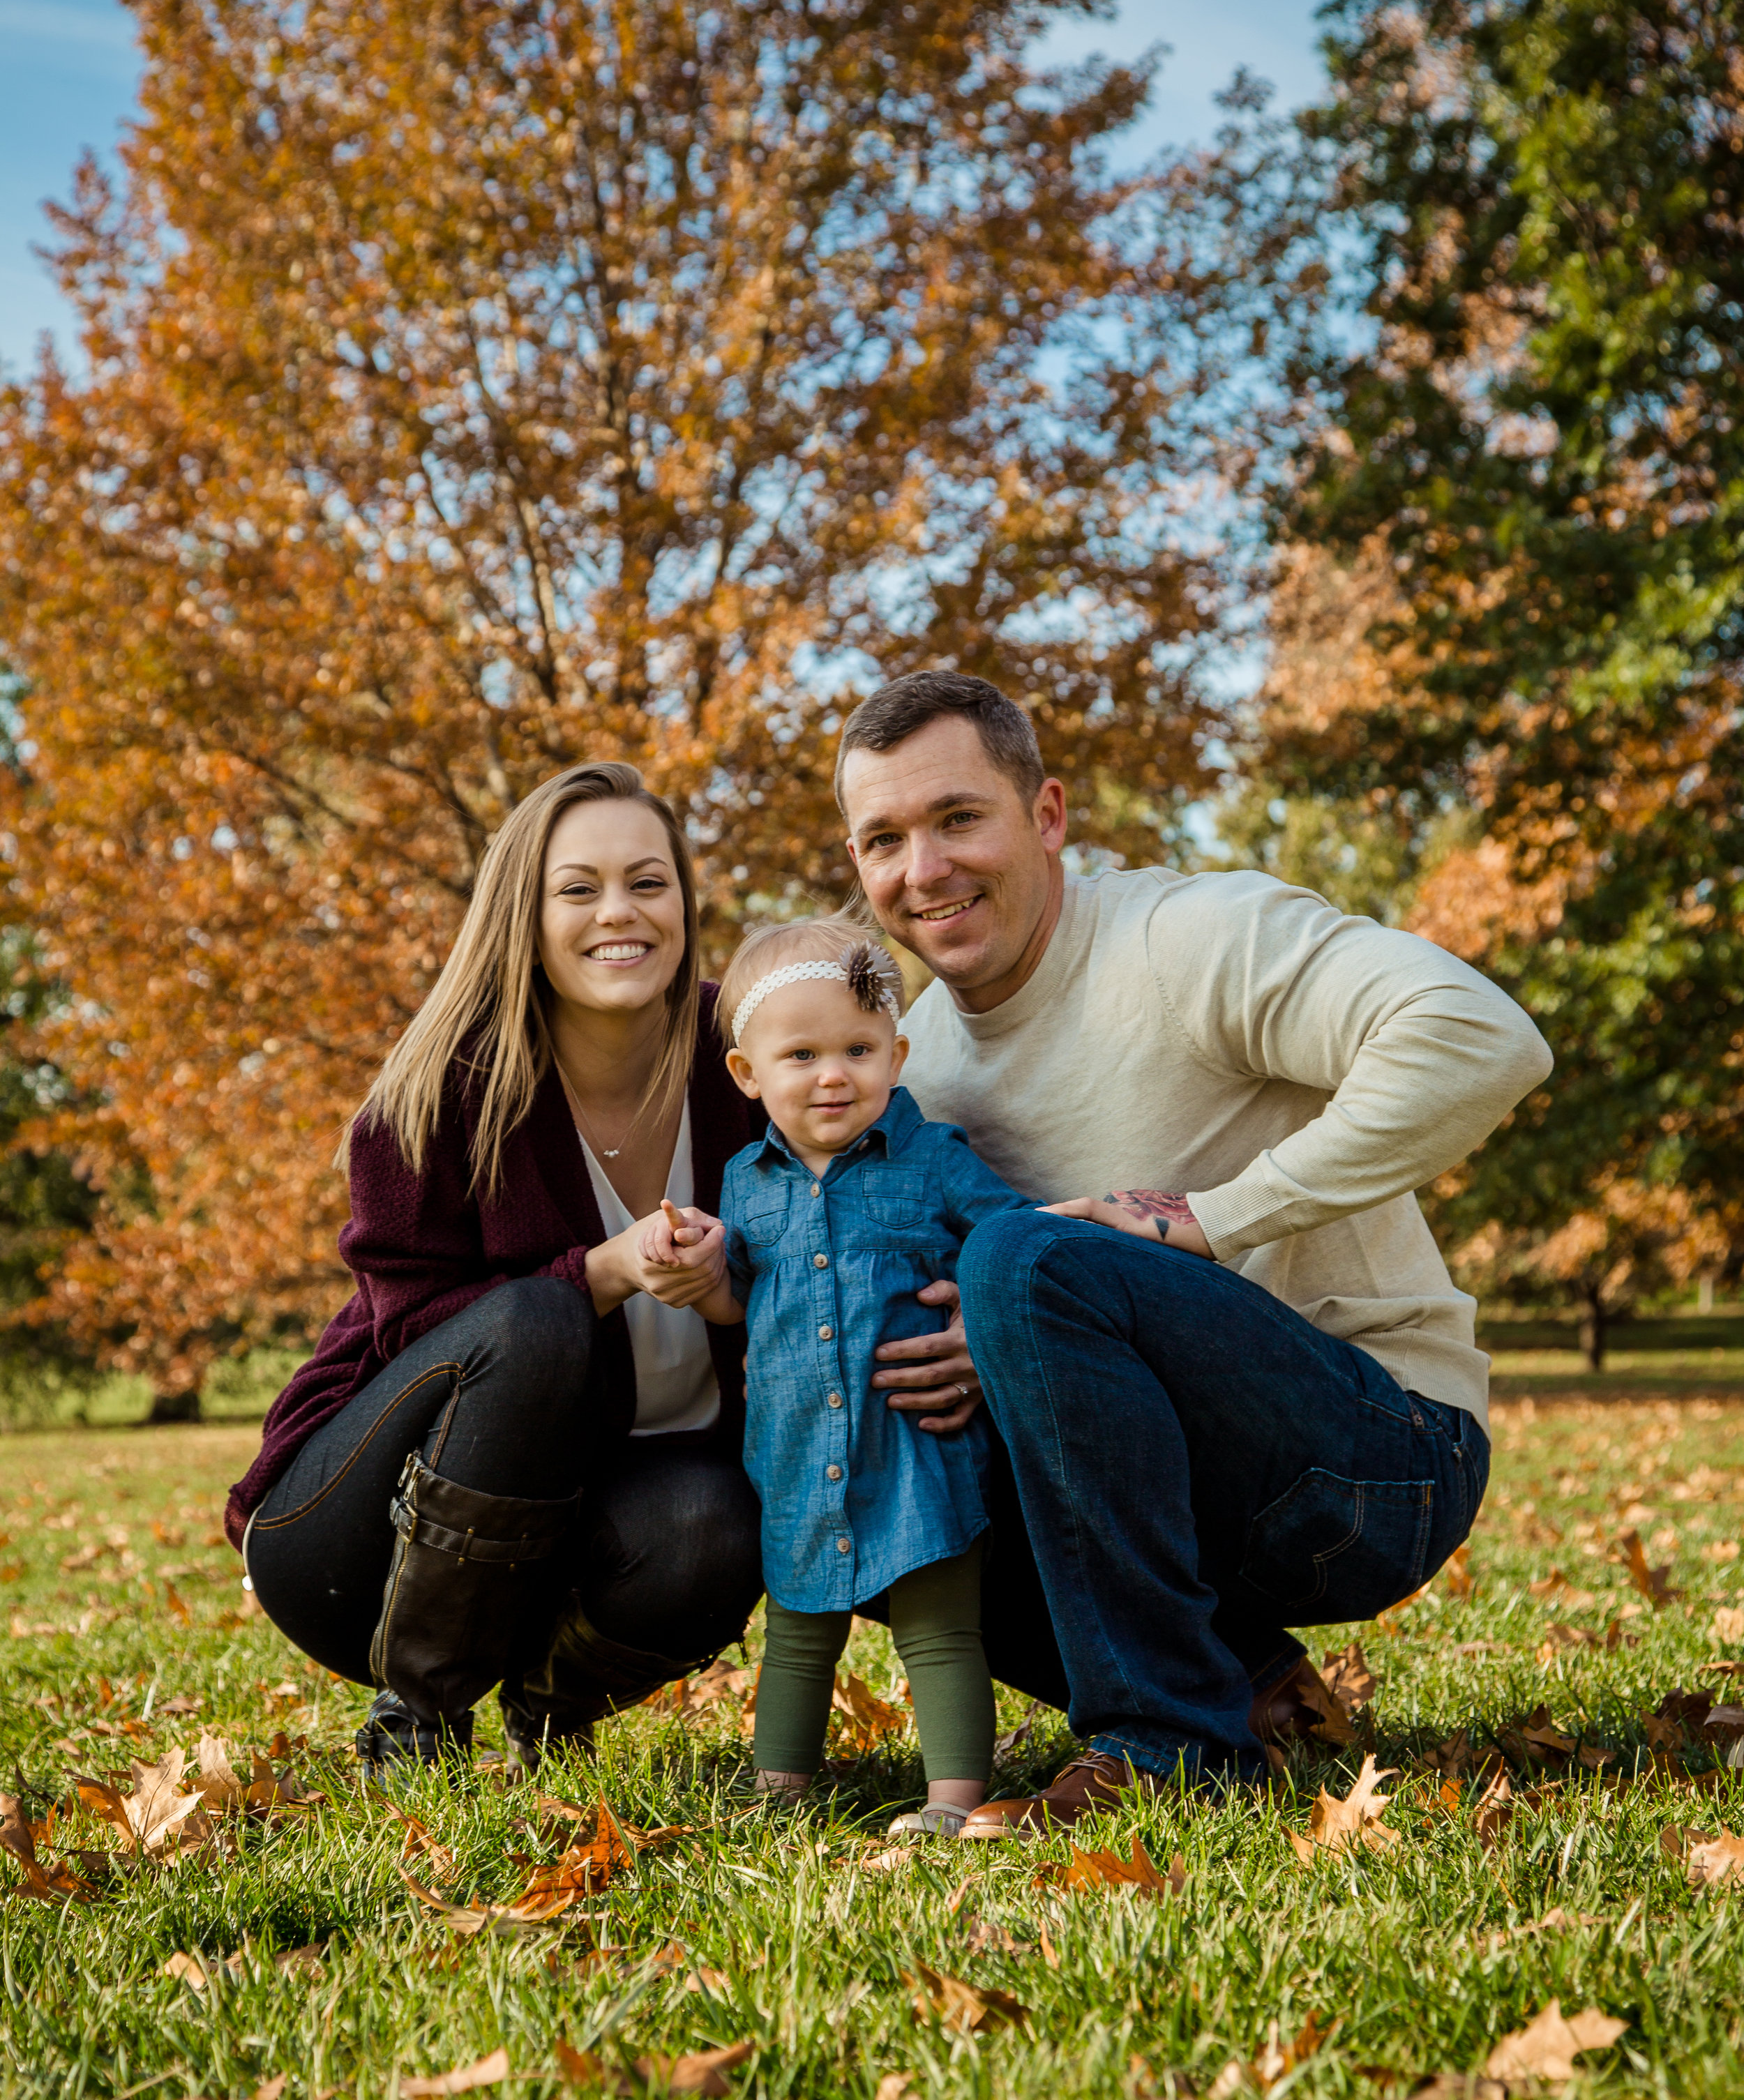 Bennett-Burrell Family Photos 2018 (23 of 39).jpg